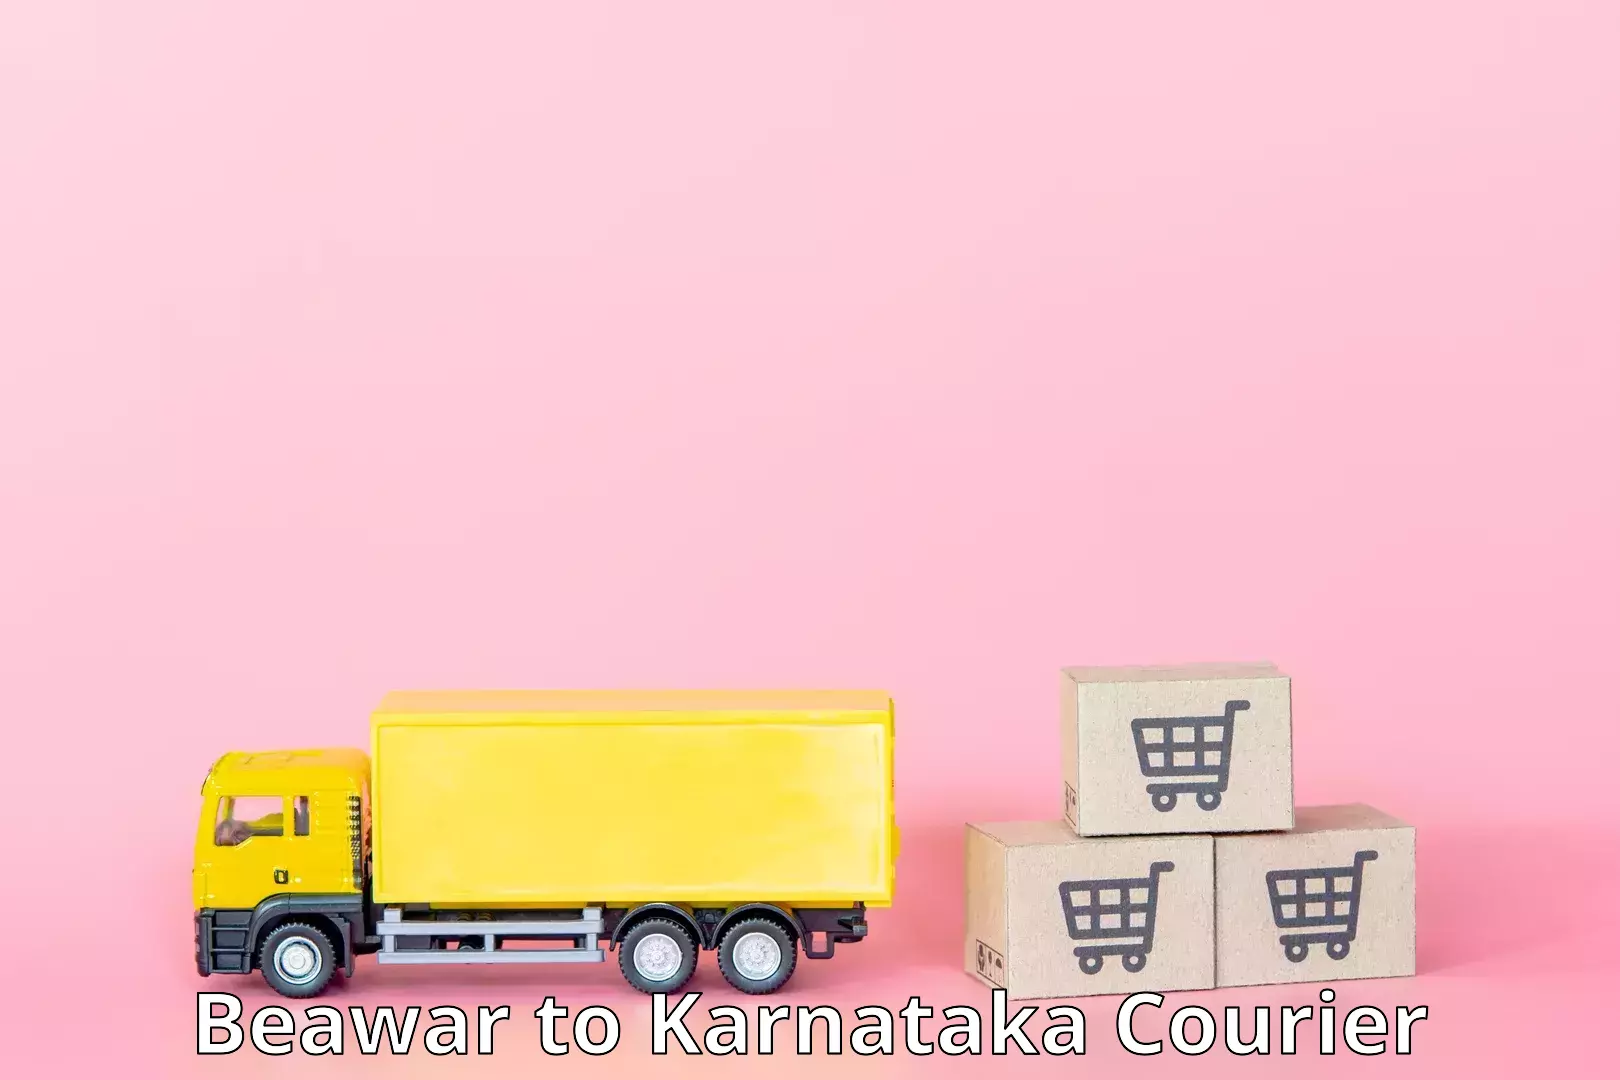 Multi-modal transport Beawar to Karnataka